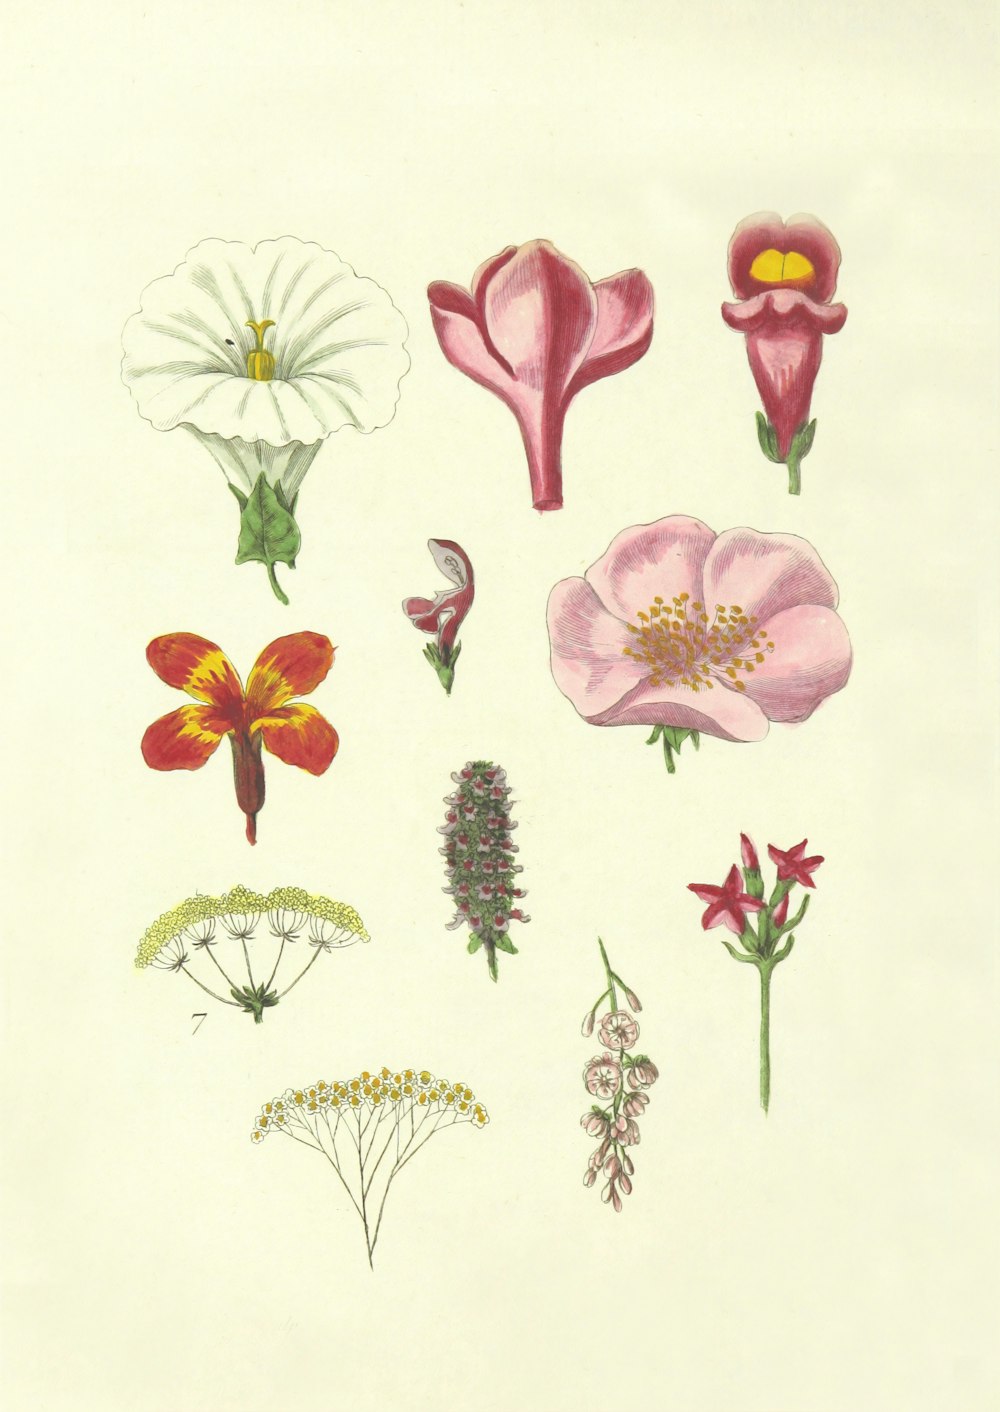 illustrazioni di fiori di colori assortiti